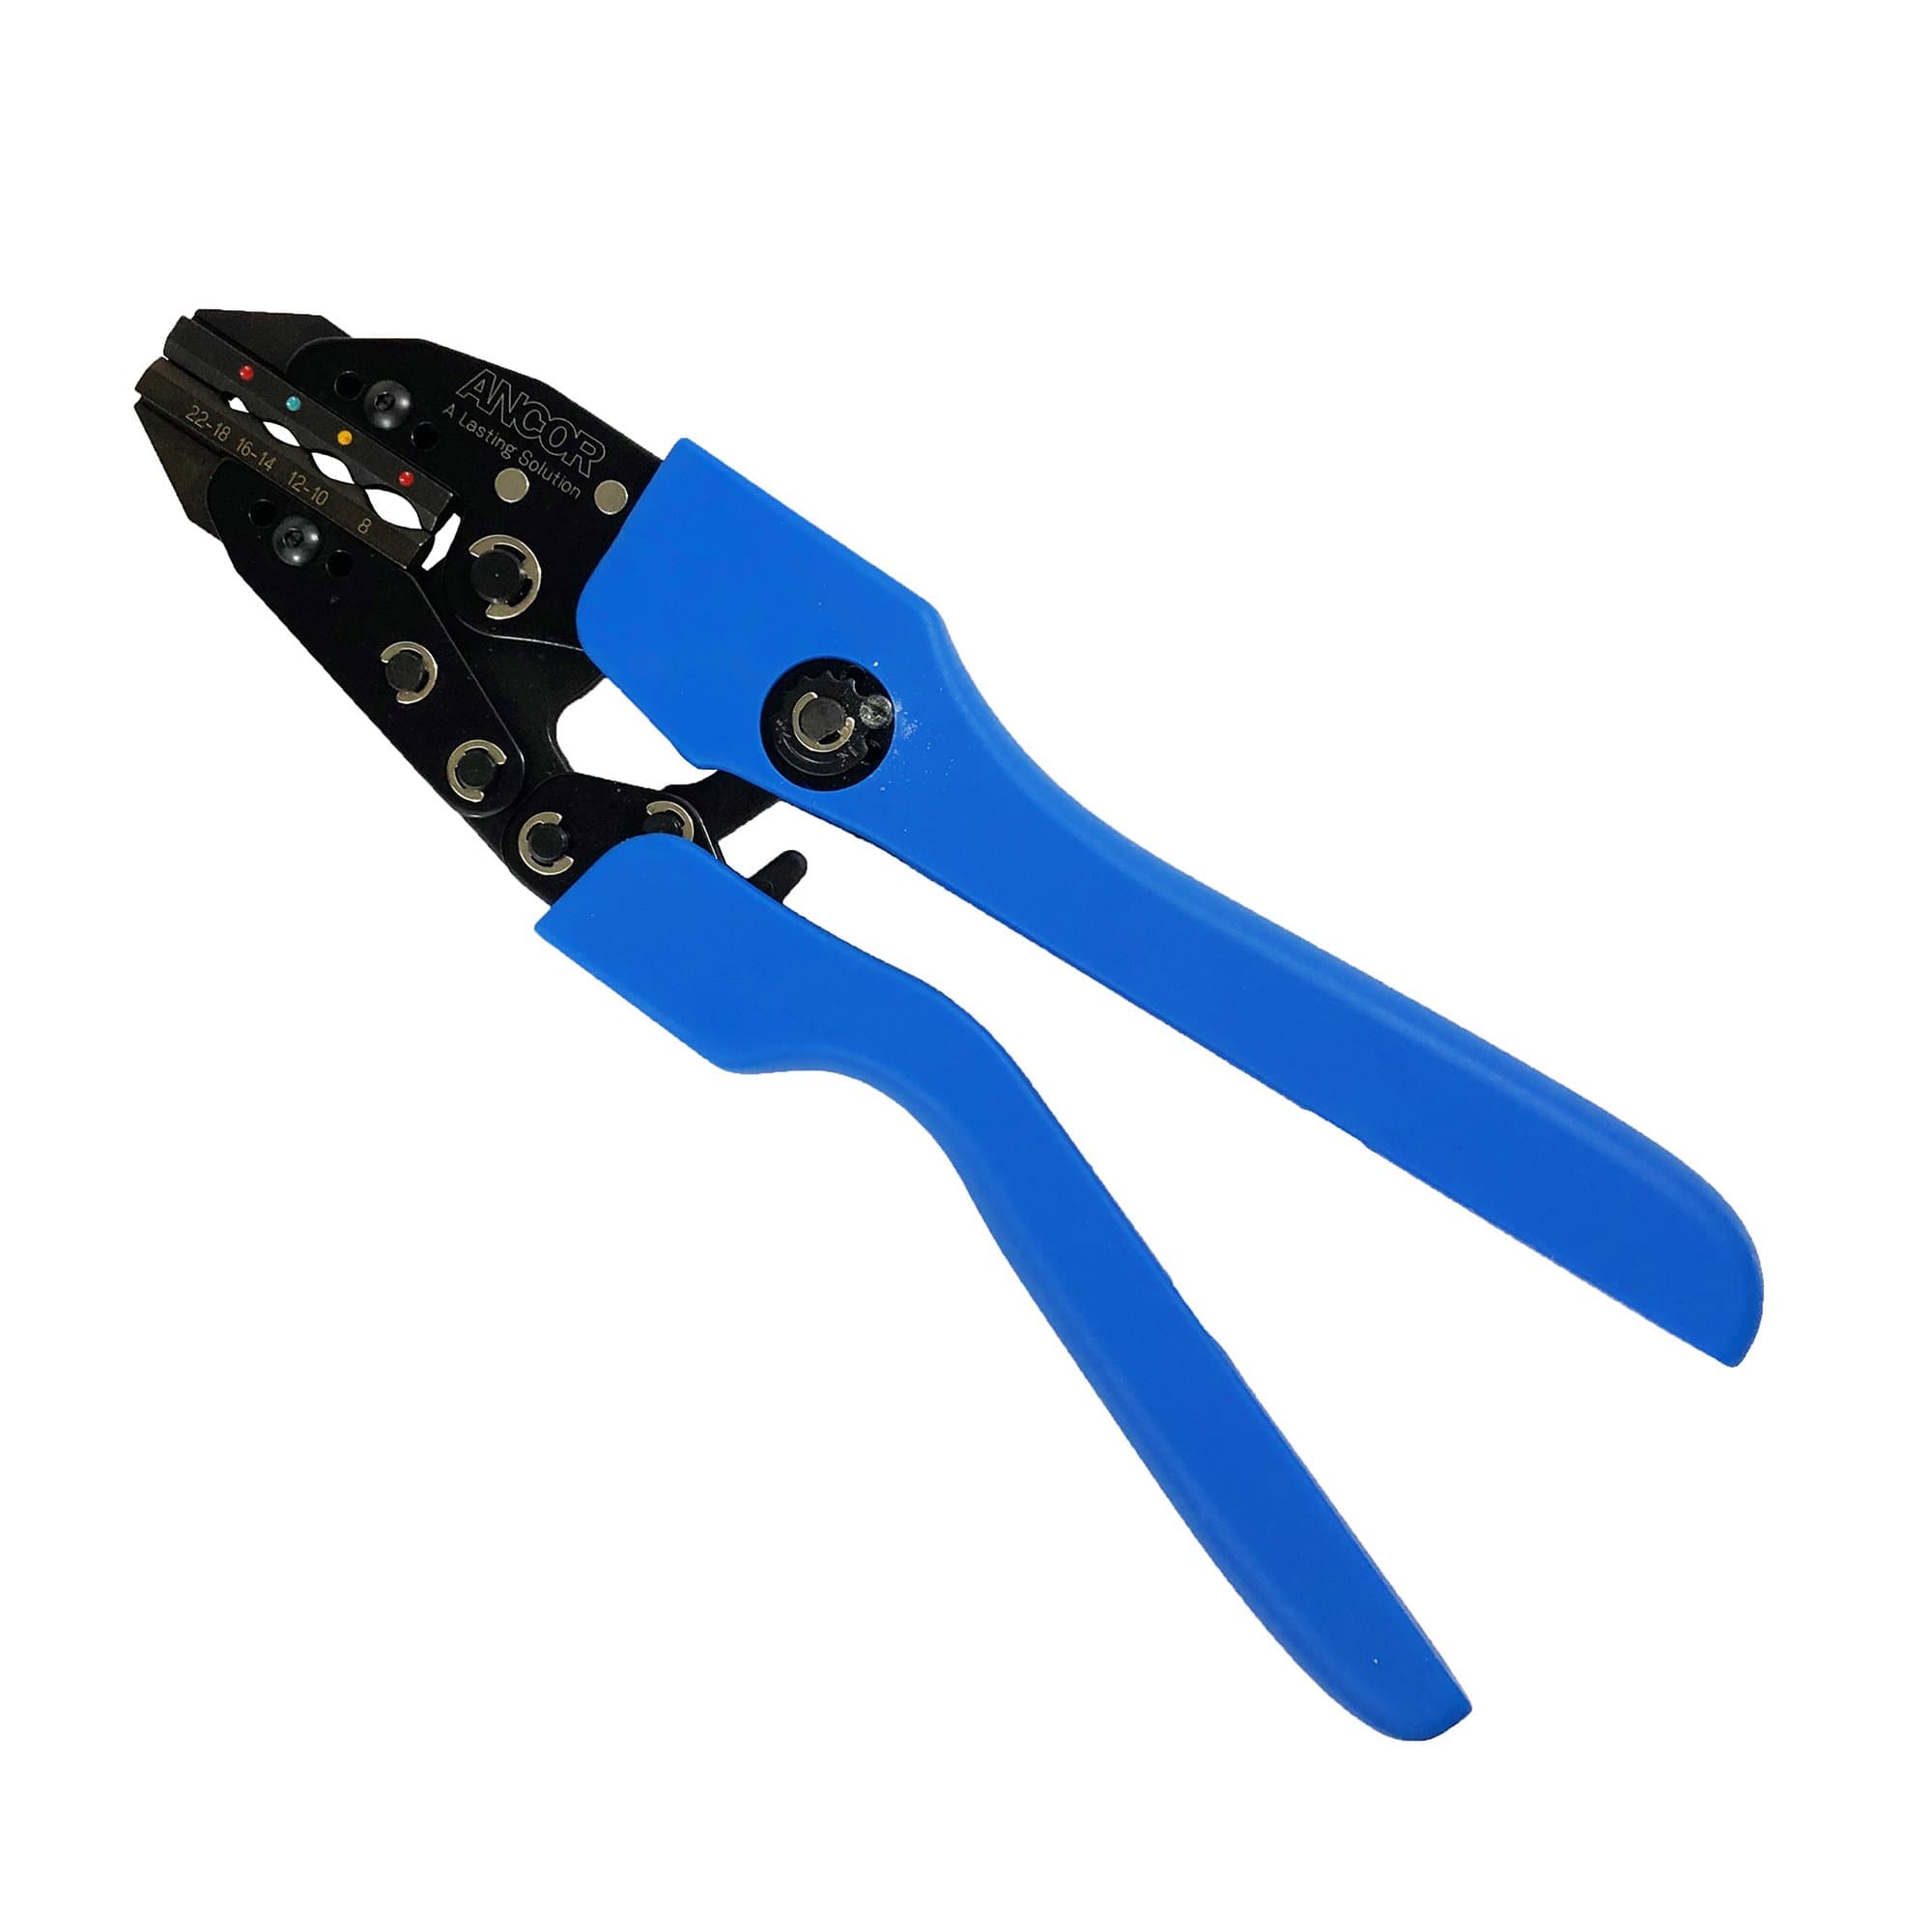 Ancor 703010 22-8 AWG Single Crimp Ratchet Tool